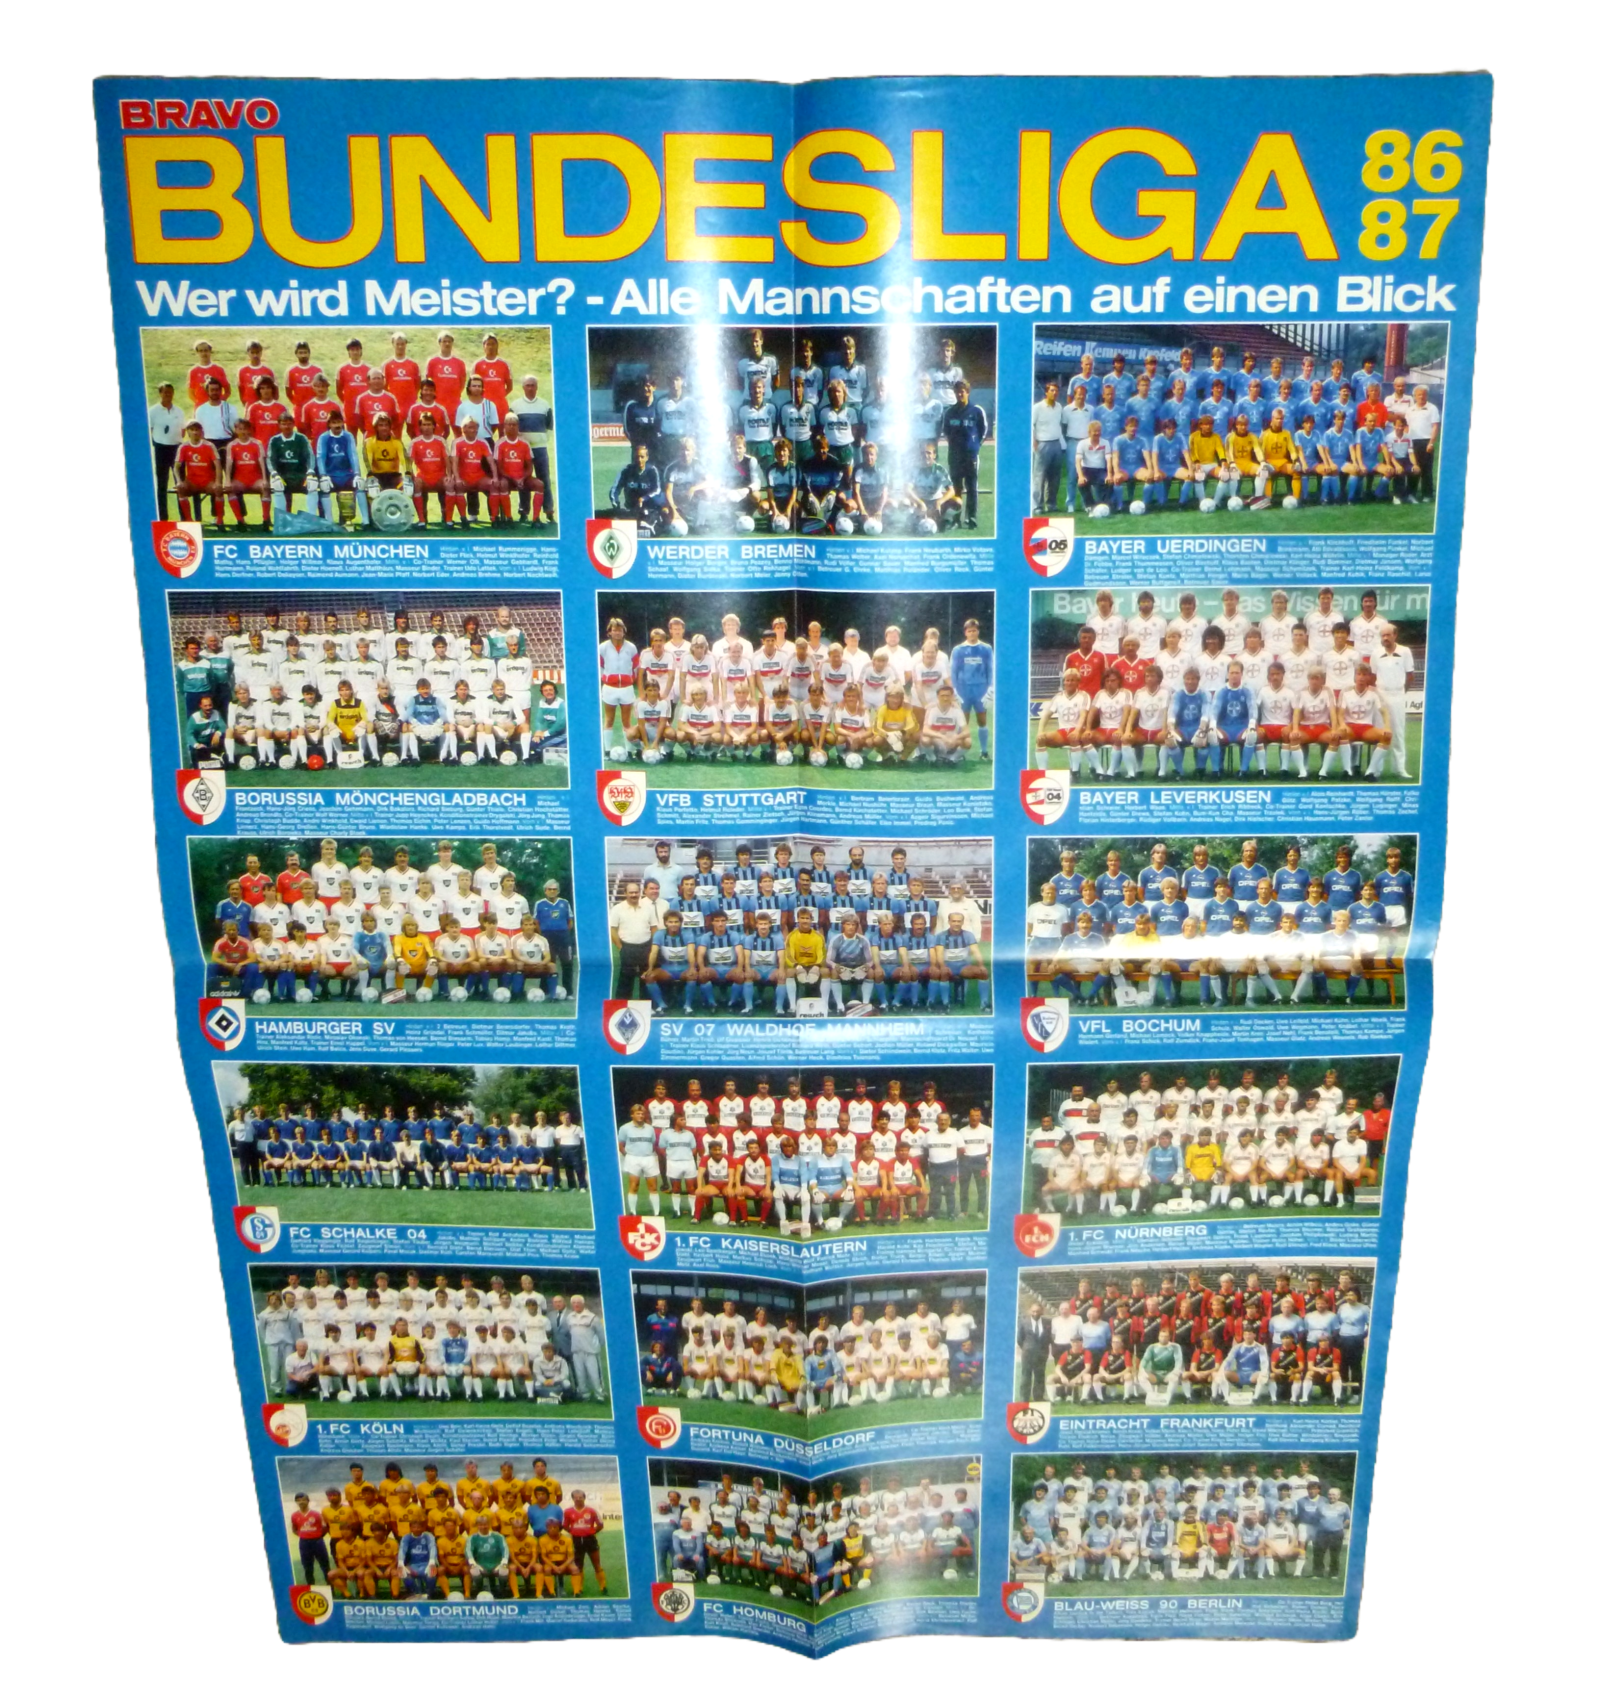 A-Ha / Bundesliga 86, 87 - Bravo 80s Poster 2